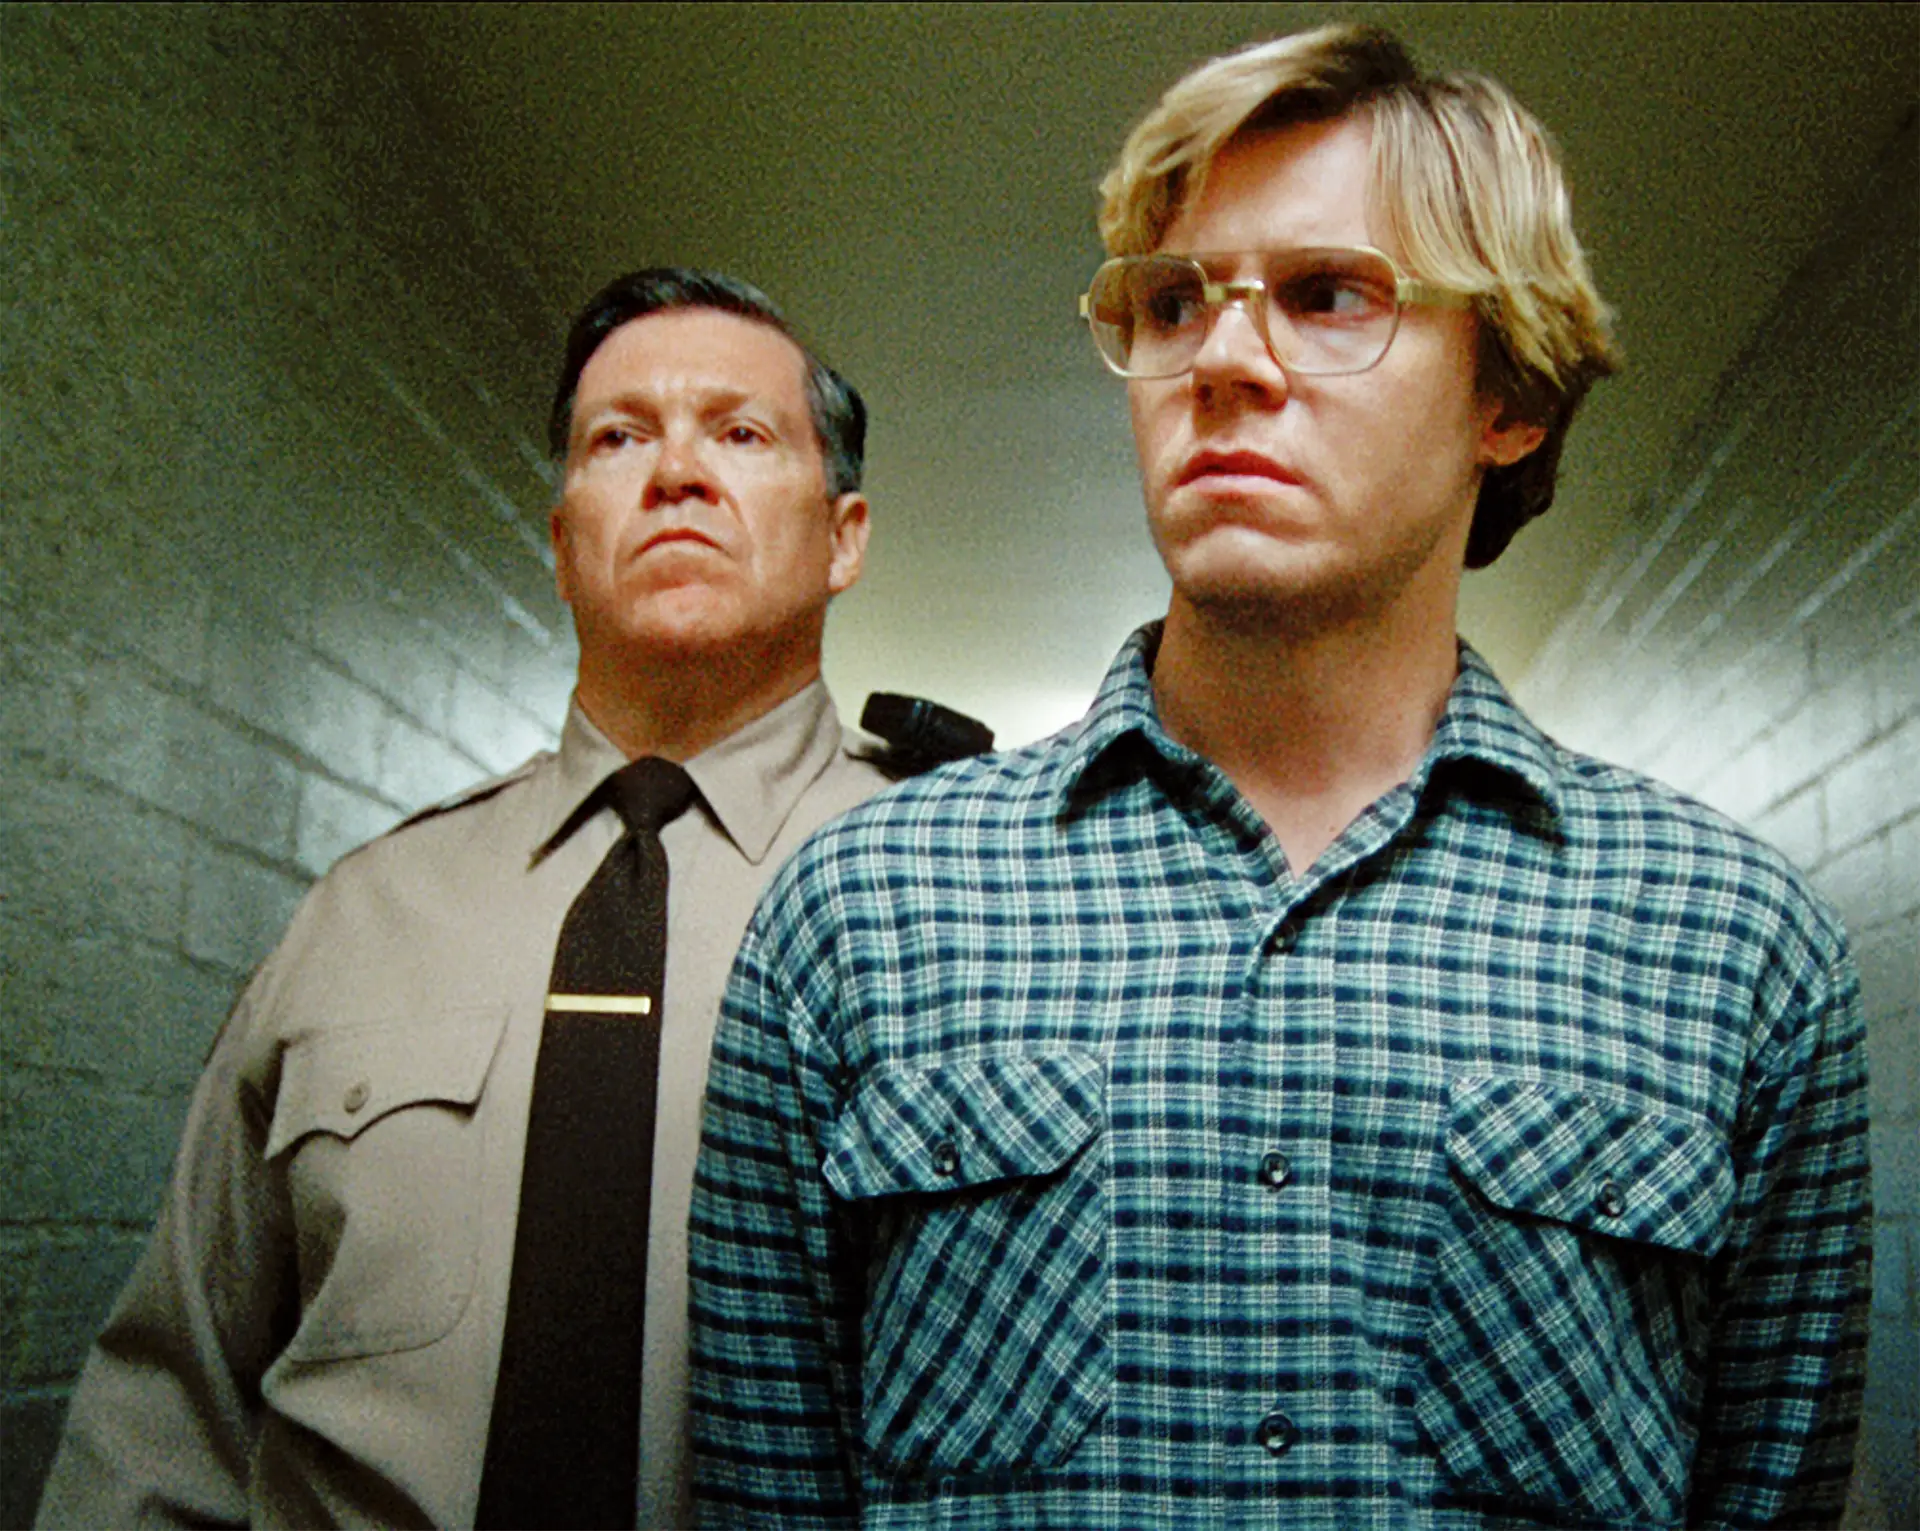 “DAHMER”: dissecámos a série sobre o serial killer Jeffrey Dahmer. Quanto vale a campeã de audiências?